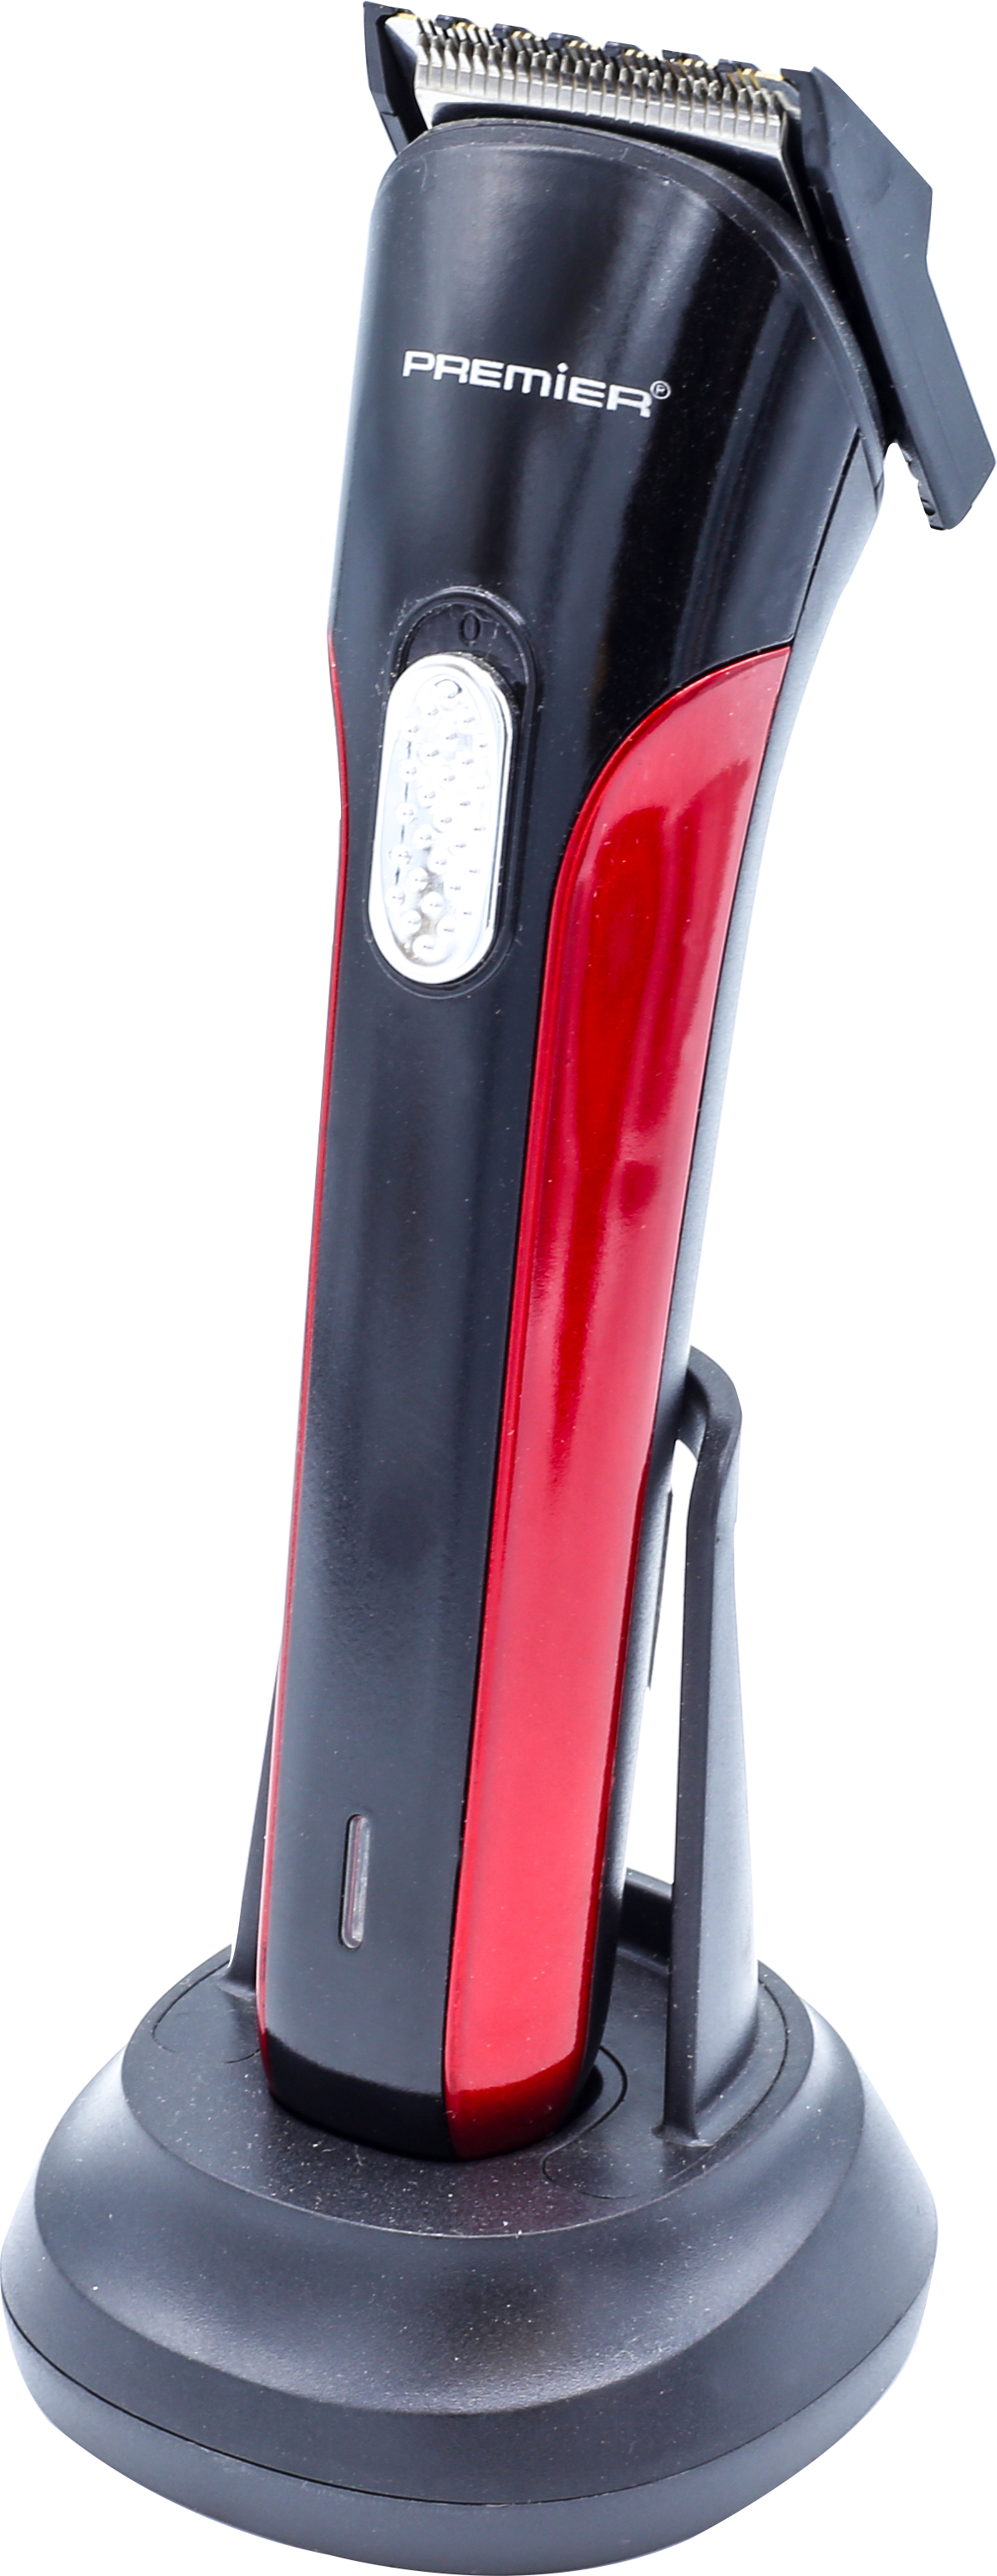 Premier Phc 6186 3W Elektrikli Saç Kesme Makinesi âŞarjlıÂ - Kırmızı